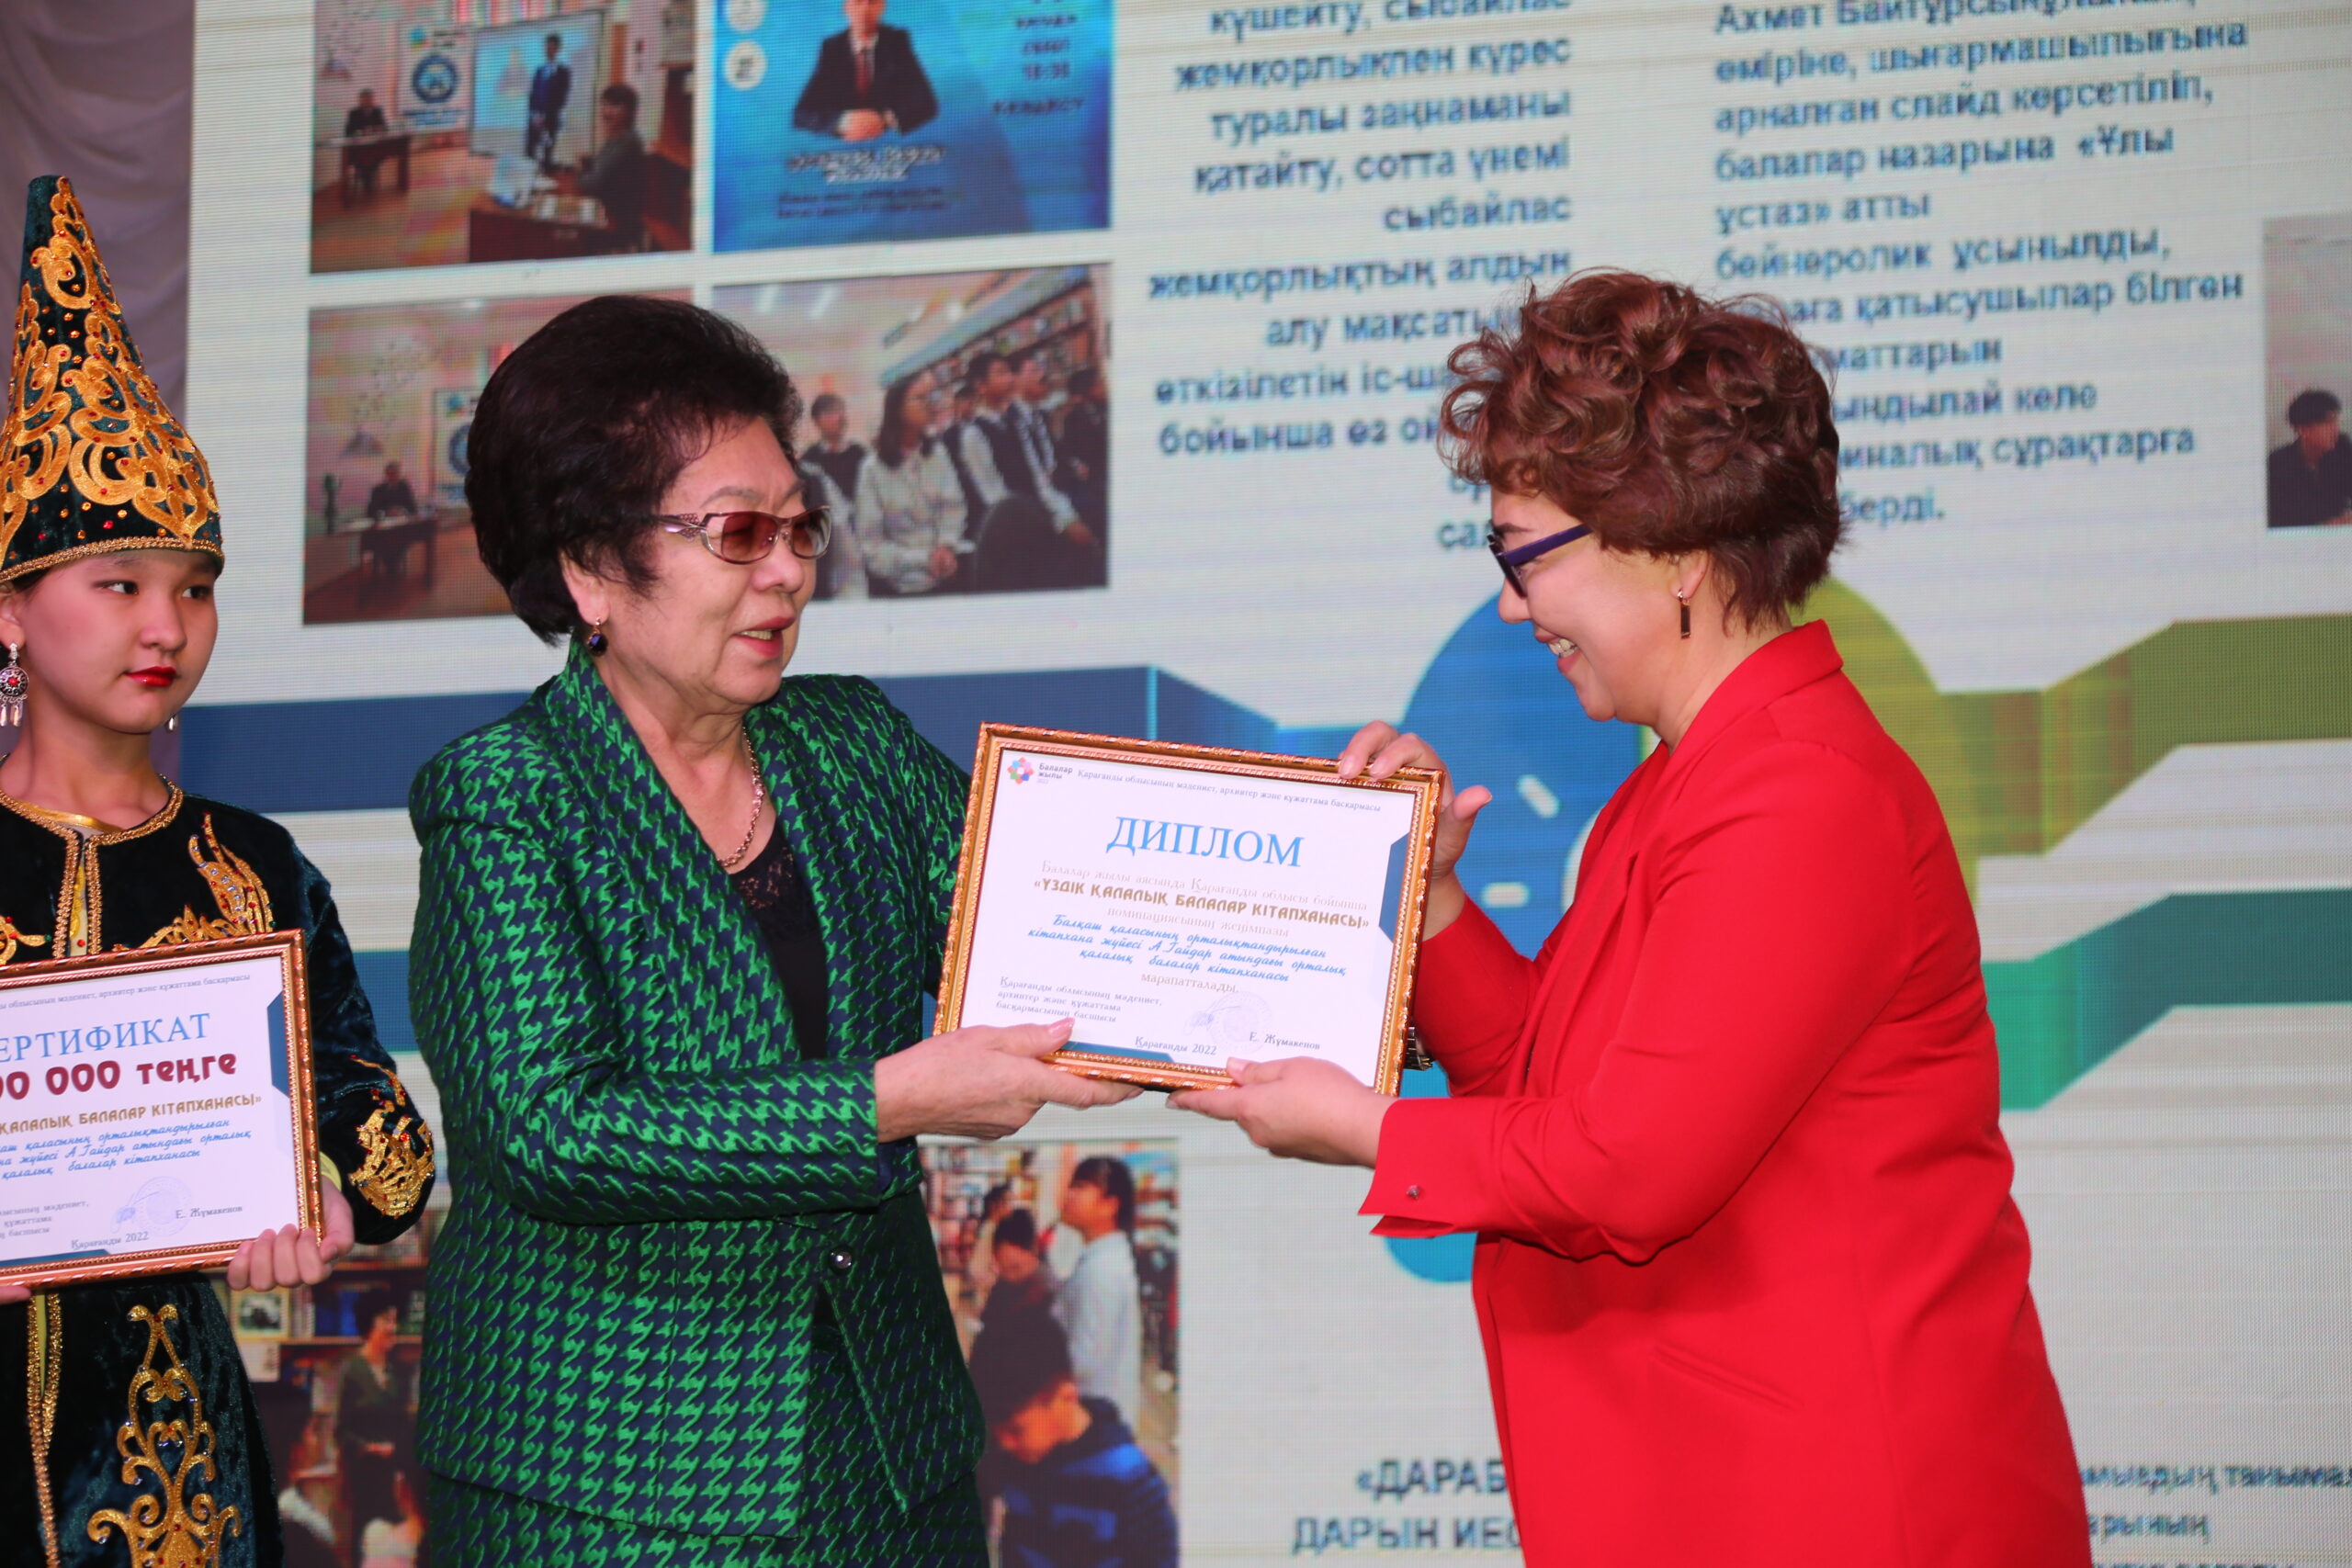  В Карагандинском областном академическом казахском драматическом театре имени С.Сейфуллина состоялась торжественная церемония награждения победителей конкурса среди библиотек региона.